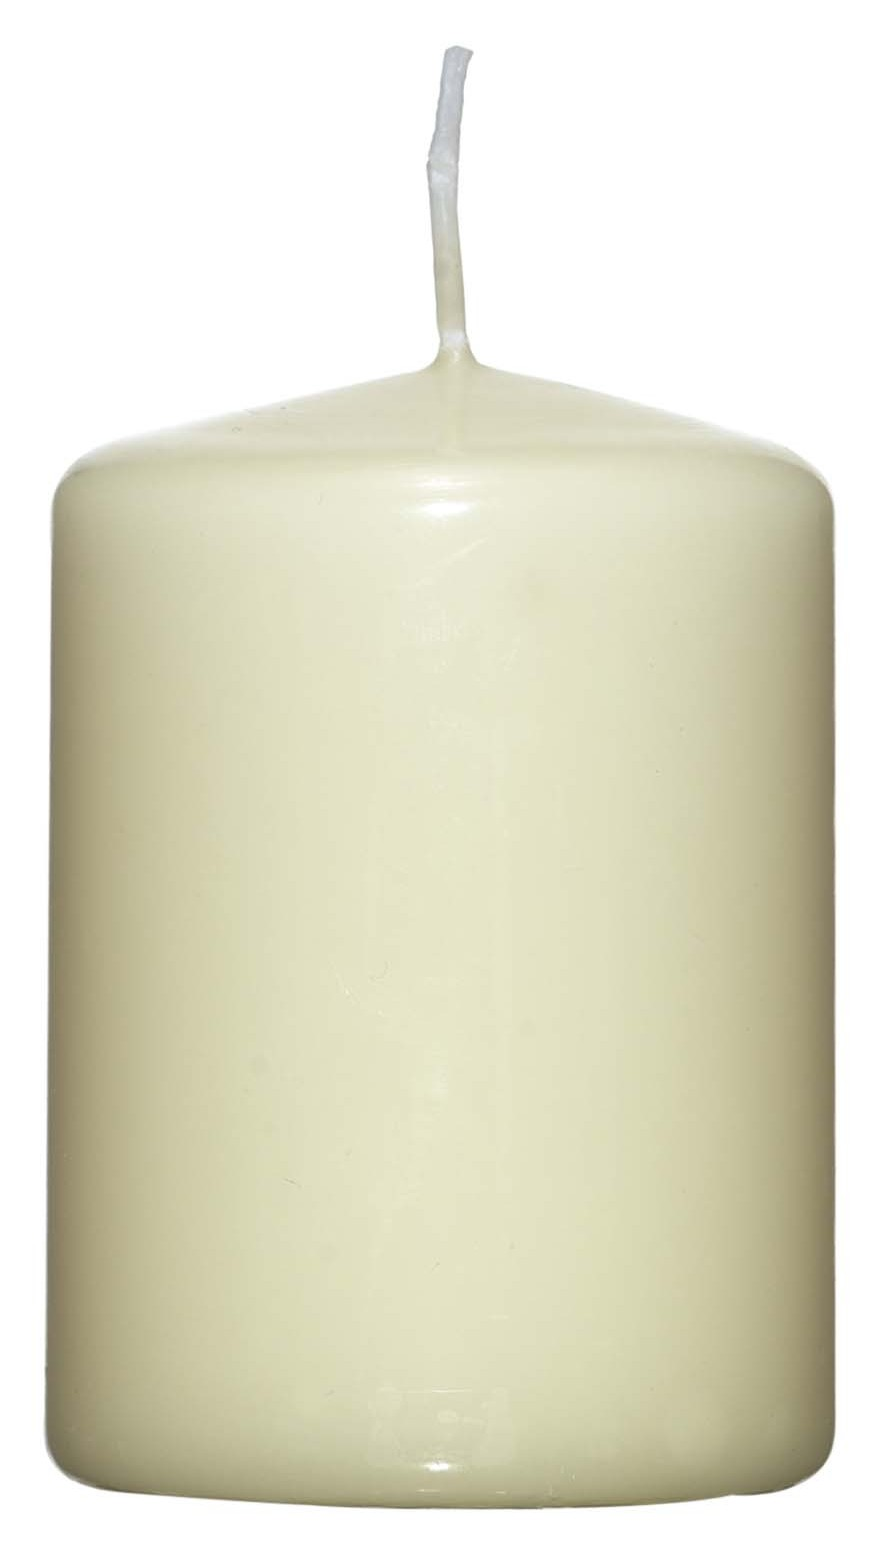 Valcová sviečka šampanská, 8 cm